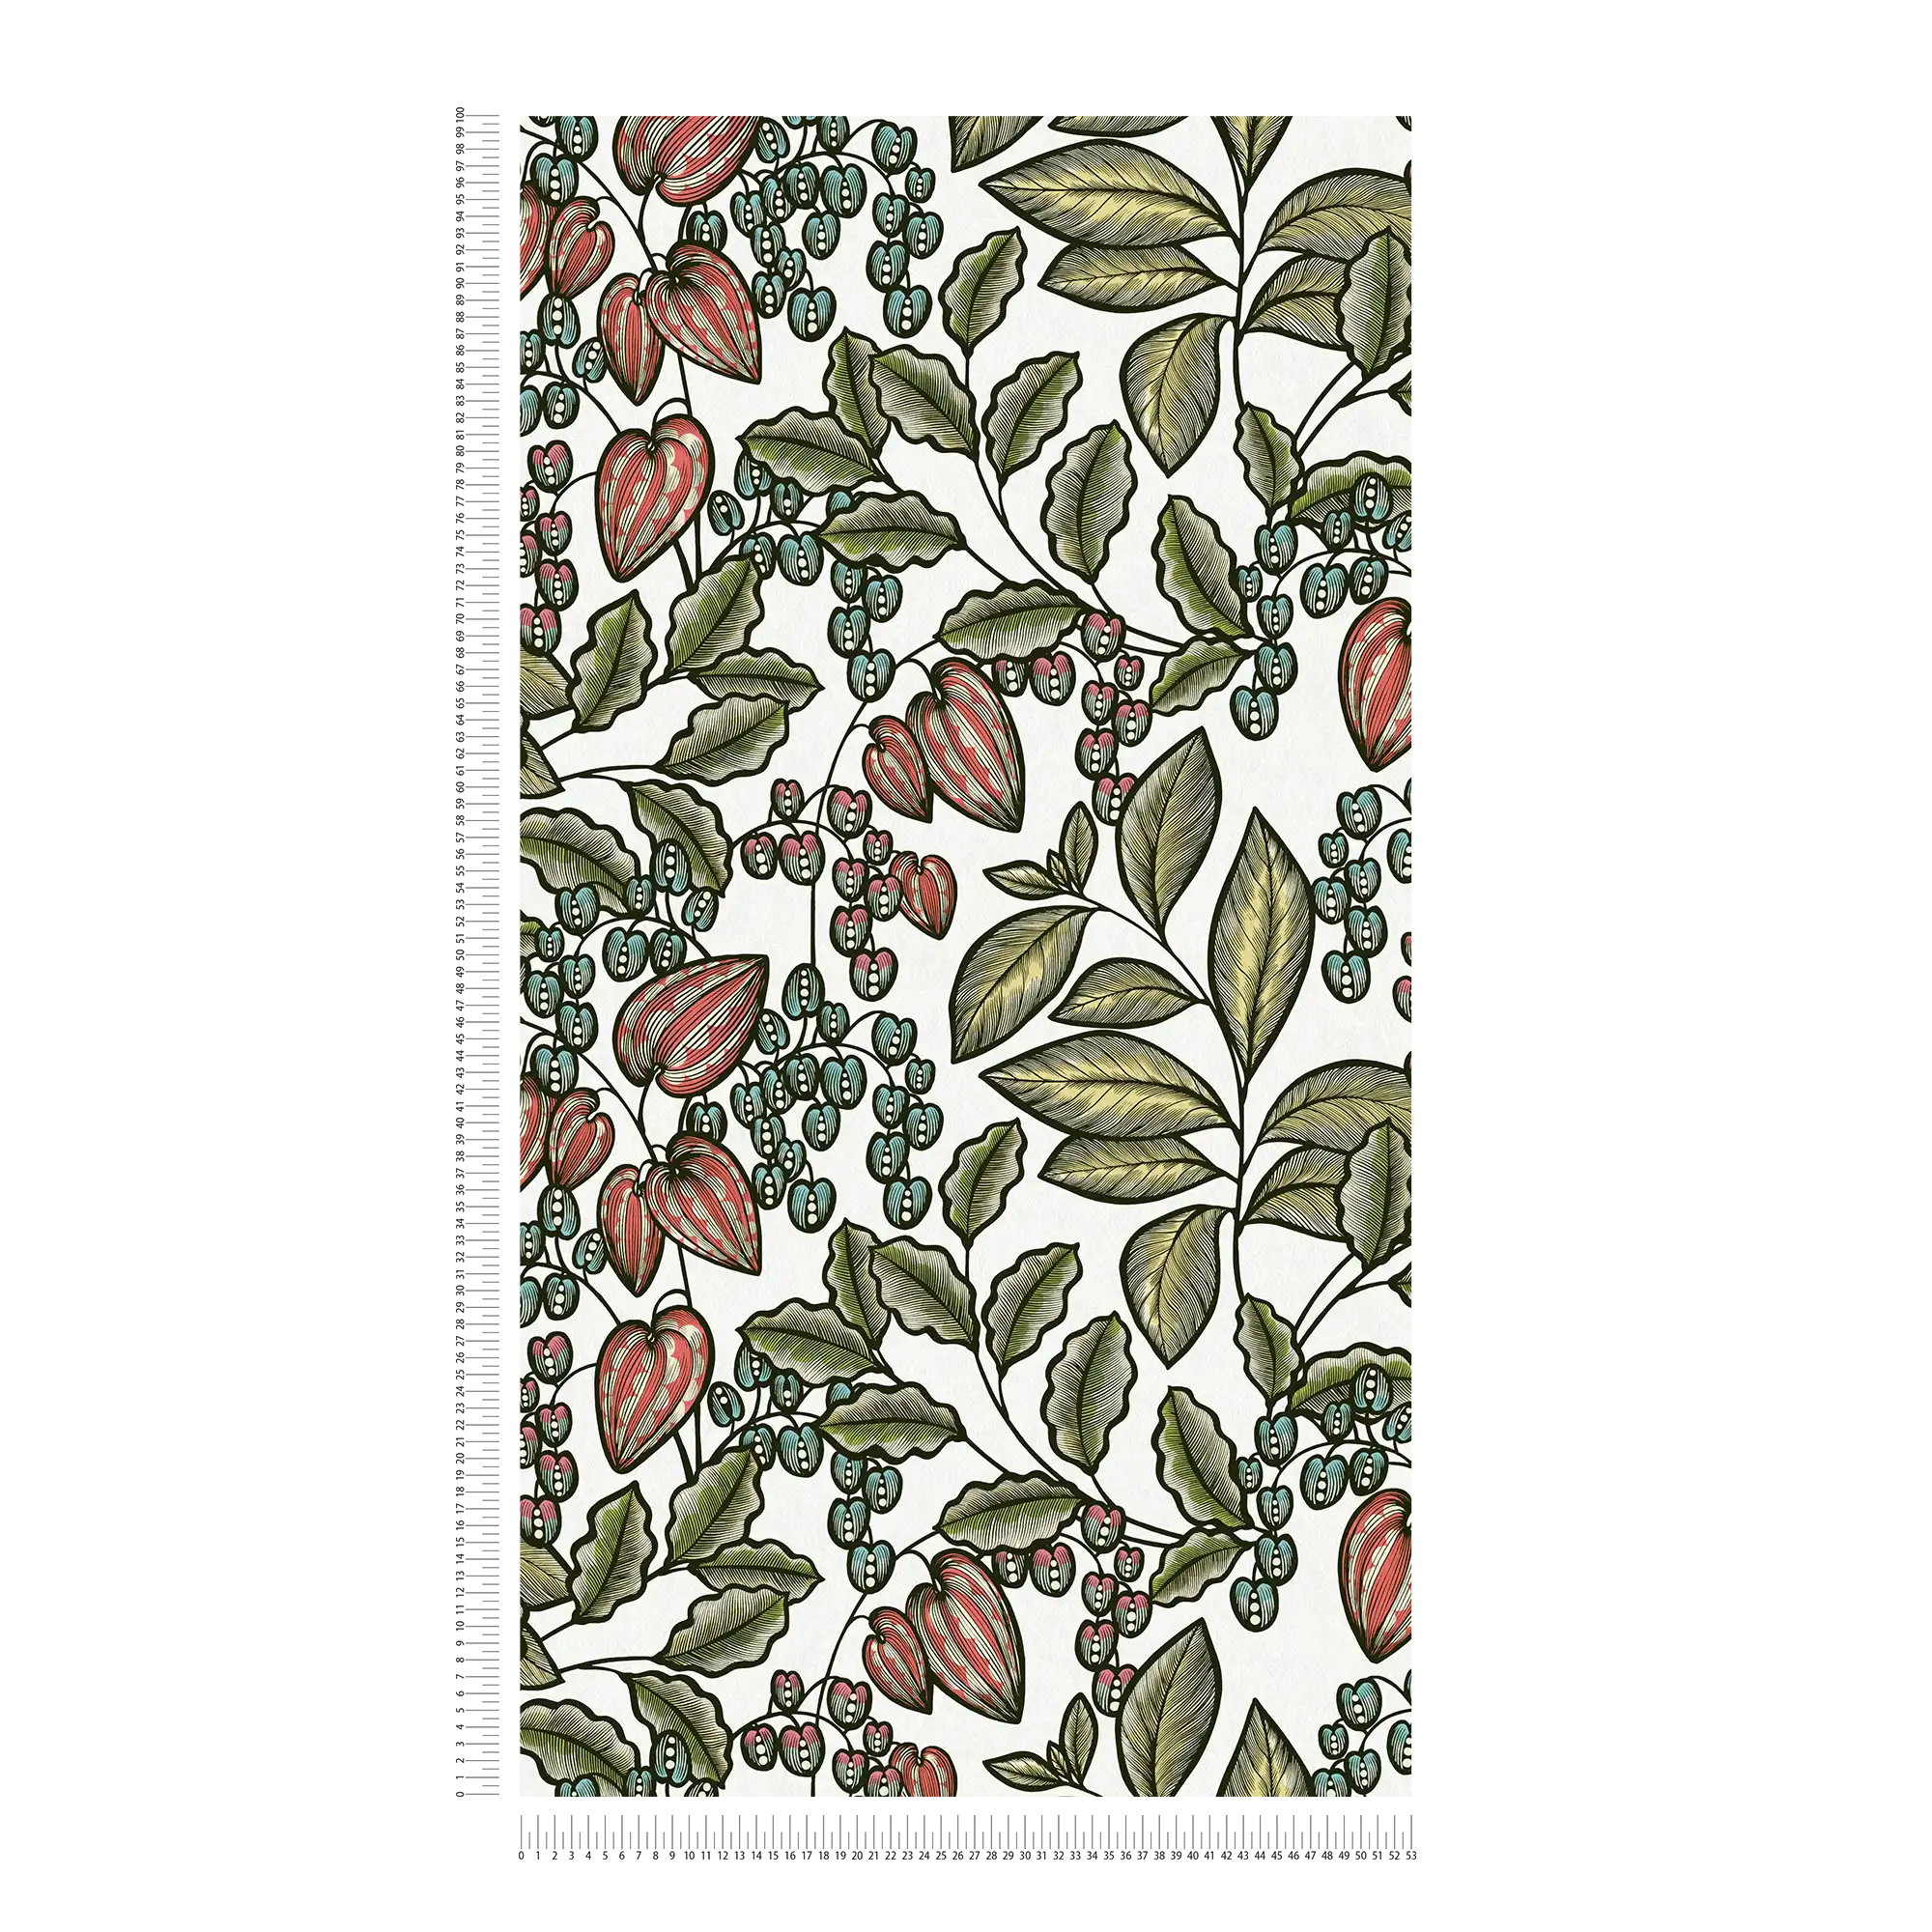             Papier peint floral Nature Design Scandinavian Print - multicolore, vert, blanc
        